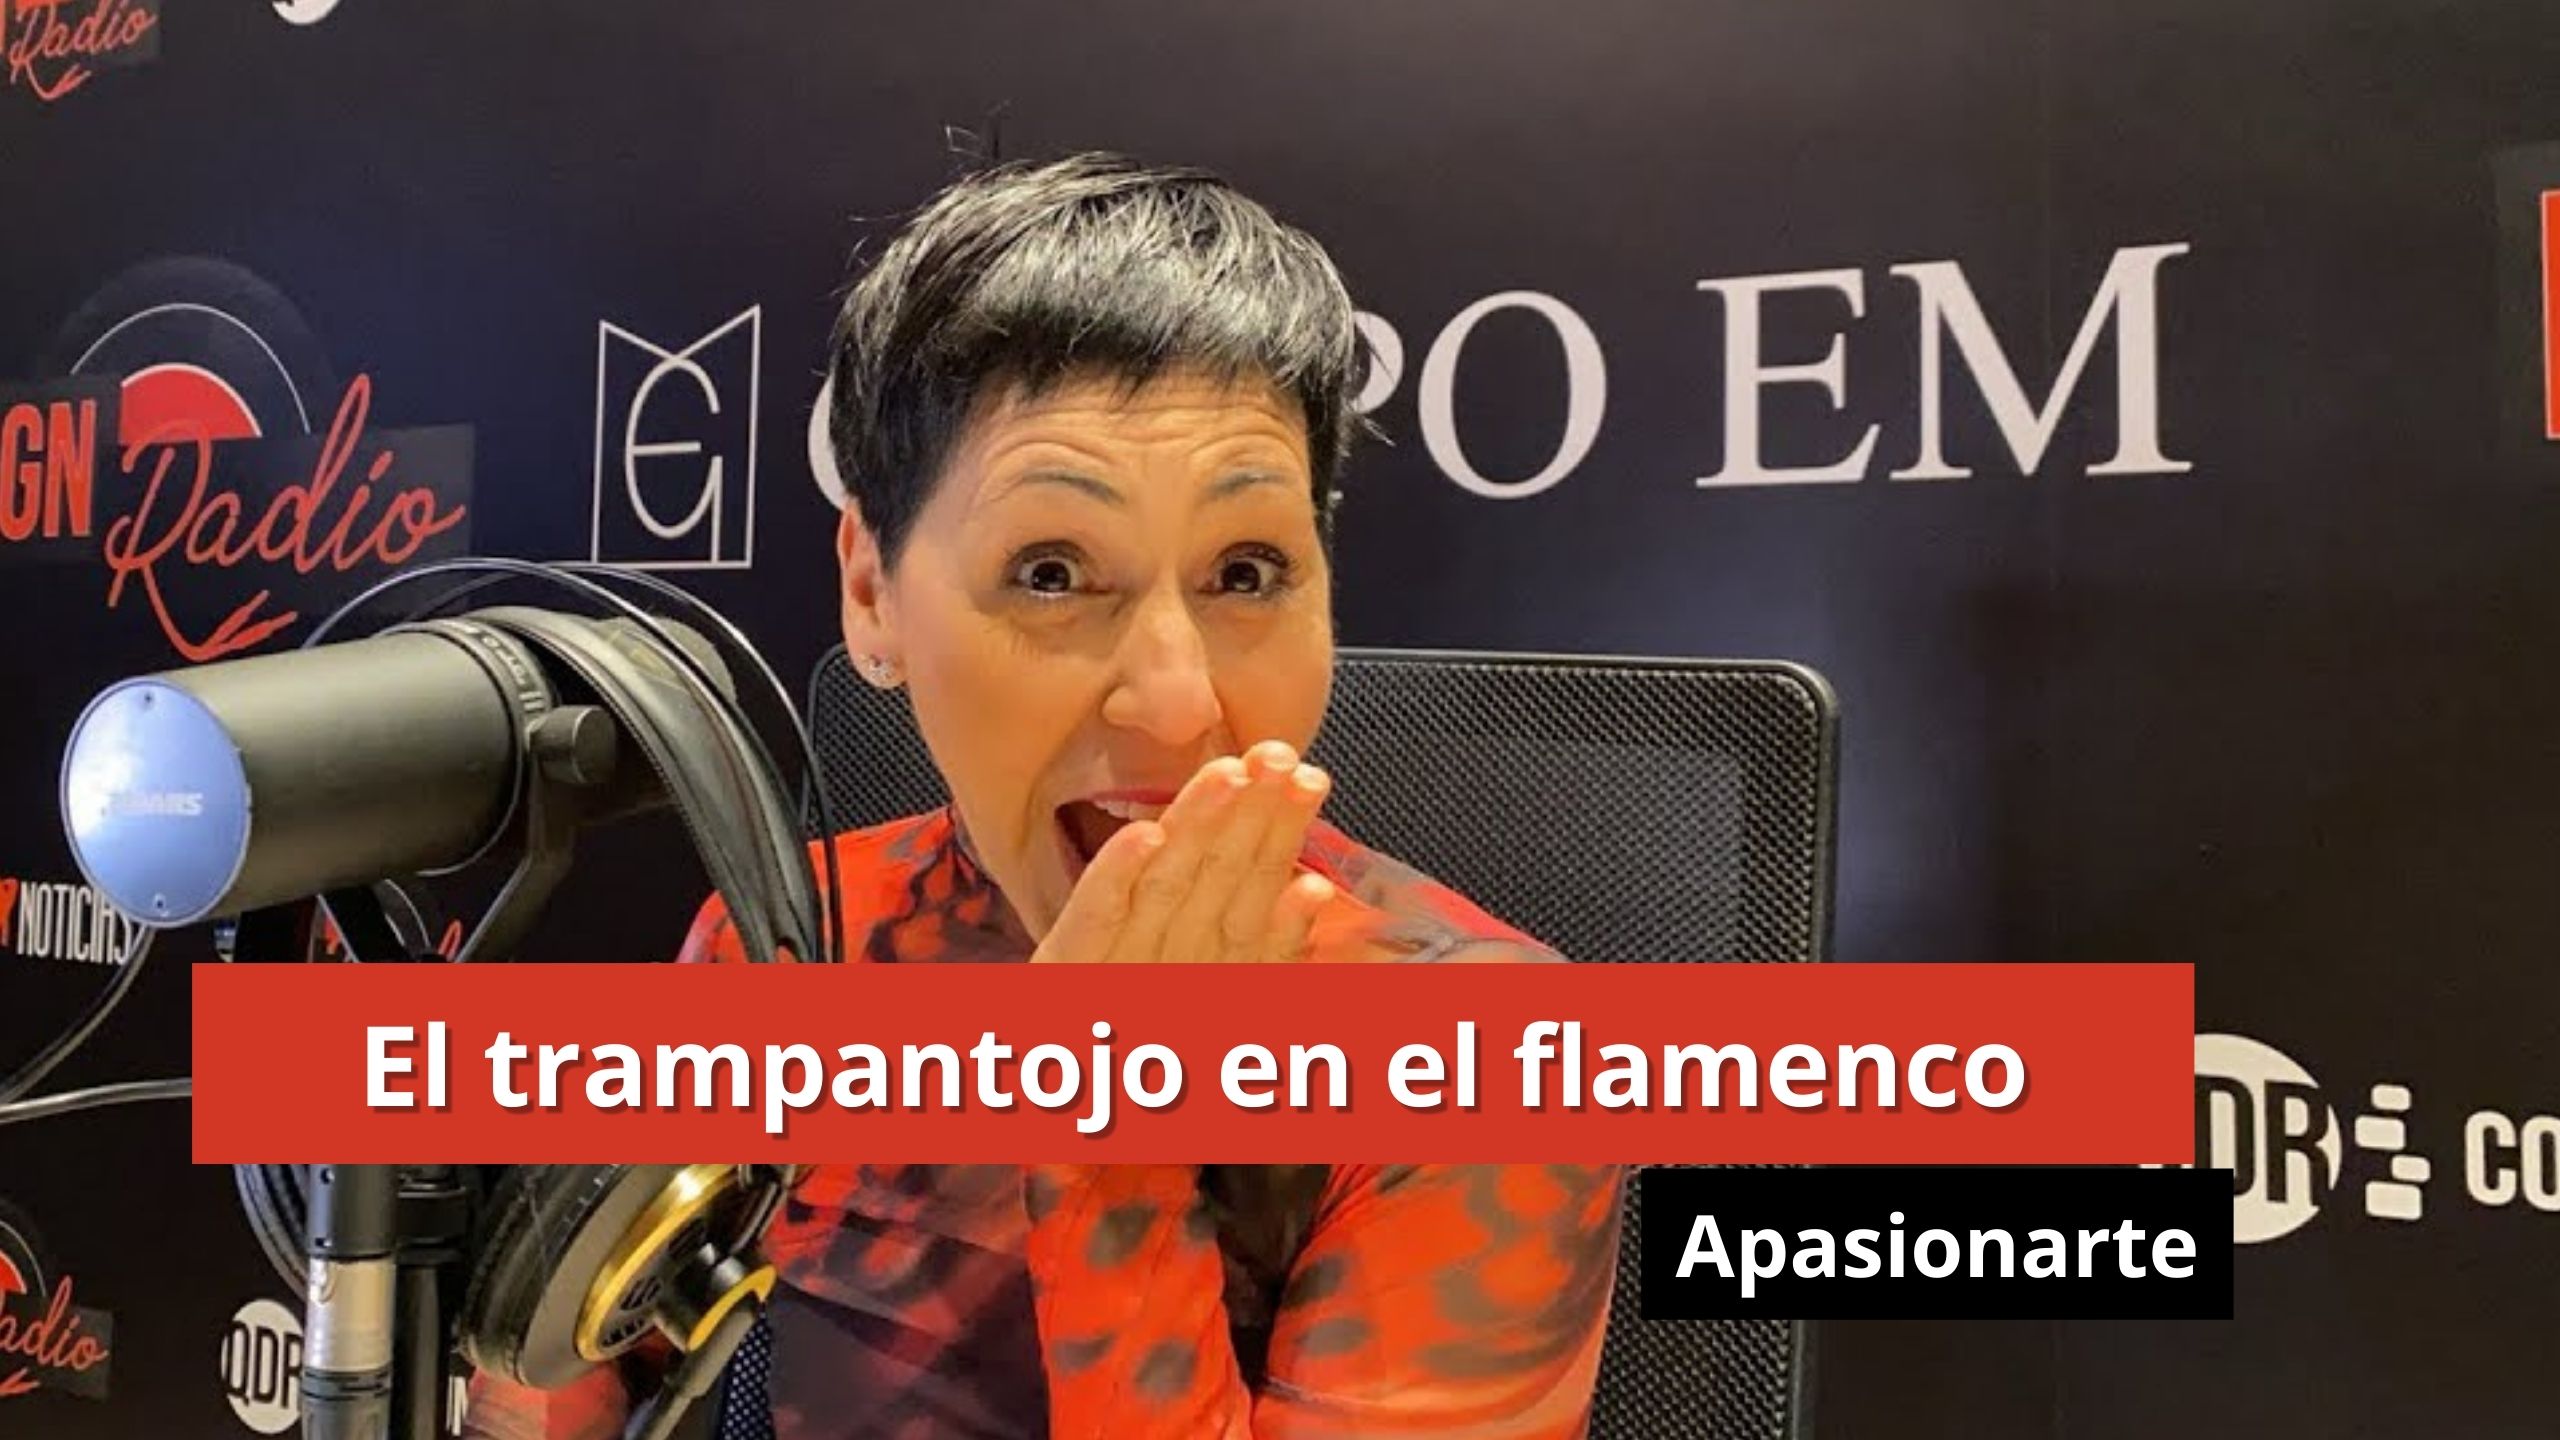 15-01-24 "El trampantojo en el flamenco" - Apasionarte